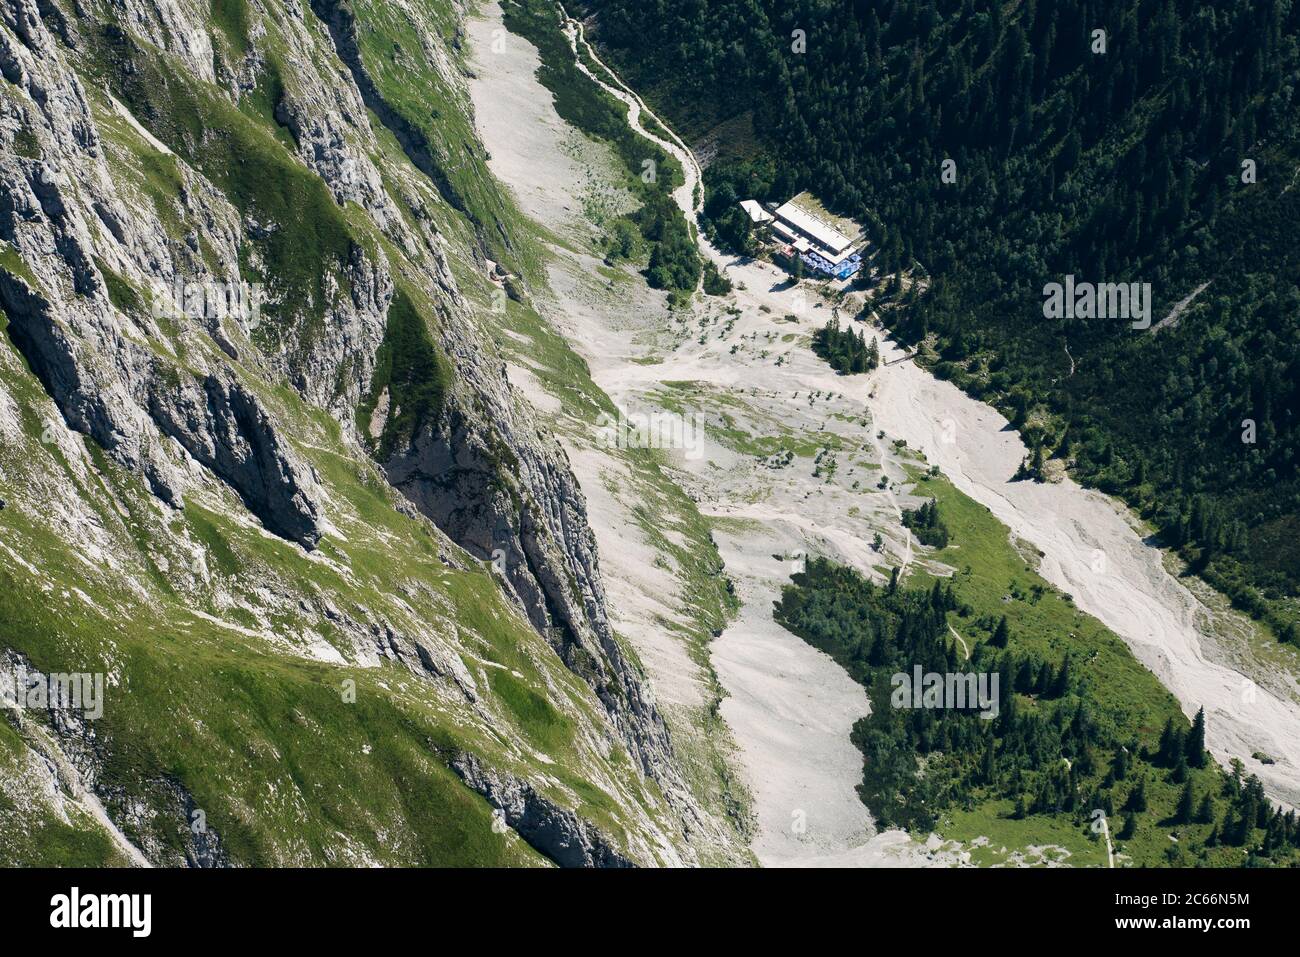 Höllental Valley with Höllentalangerhütte Mountain Hut, aerial view, Garmisch-Partenkirchen, Bavaria, Germany Stock Photo